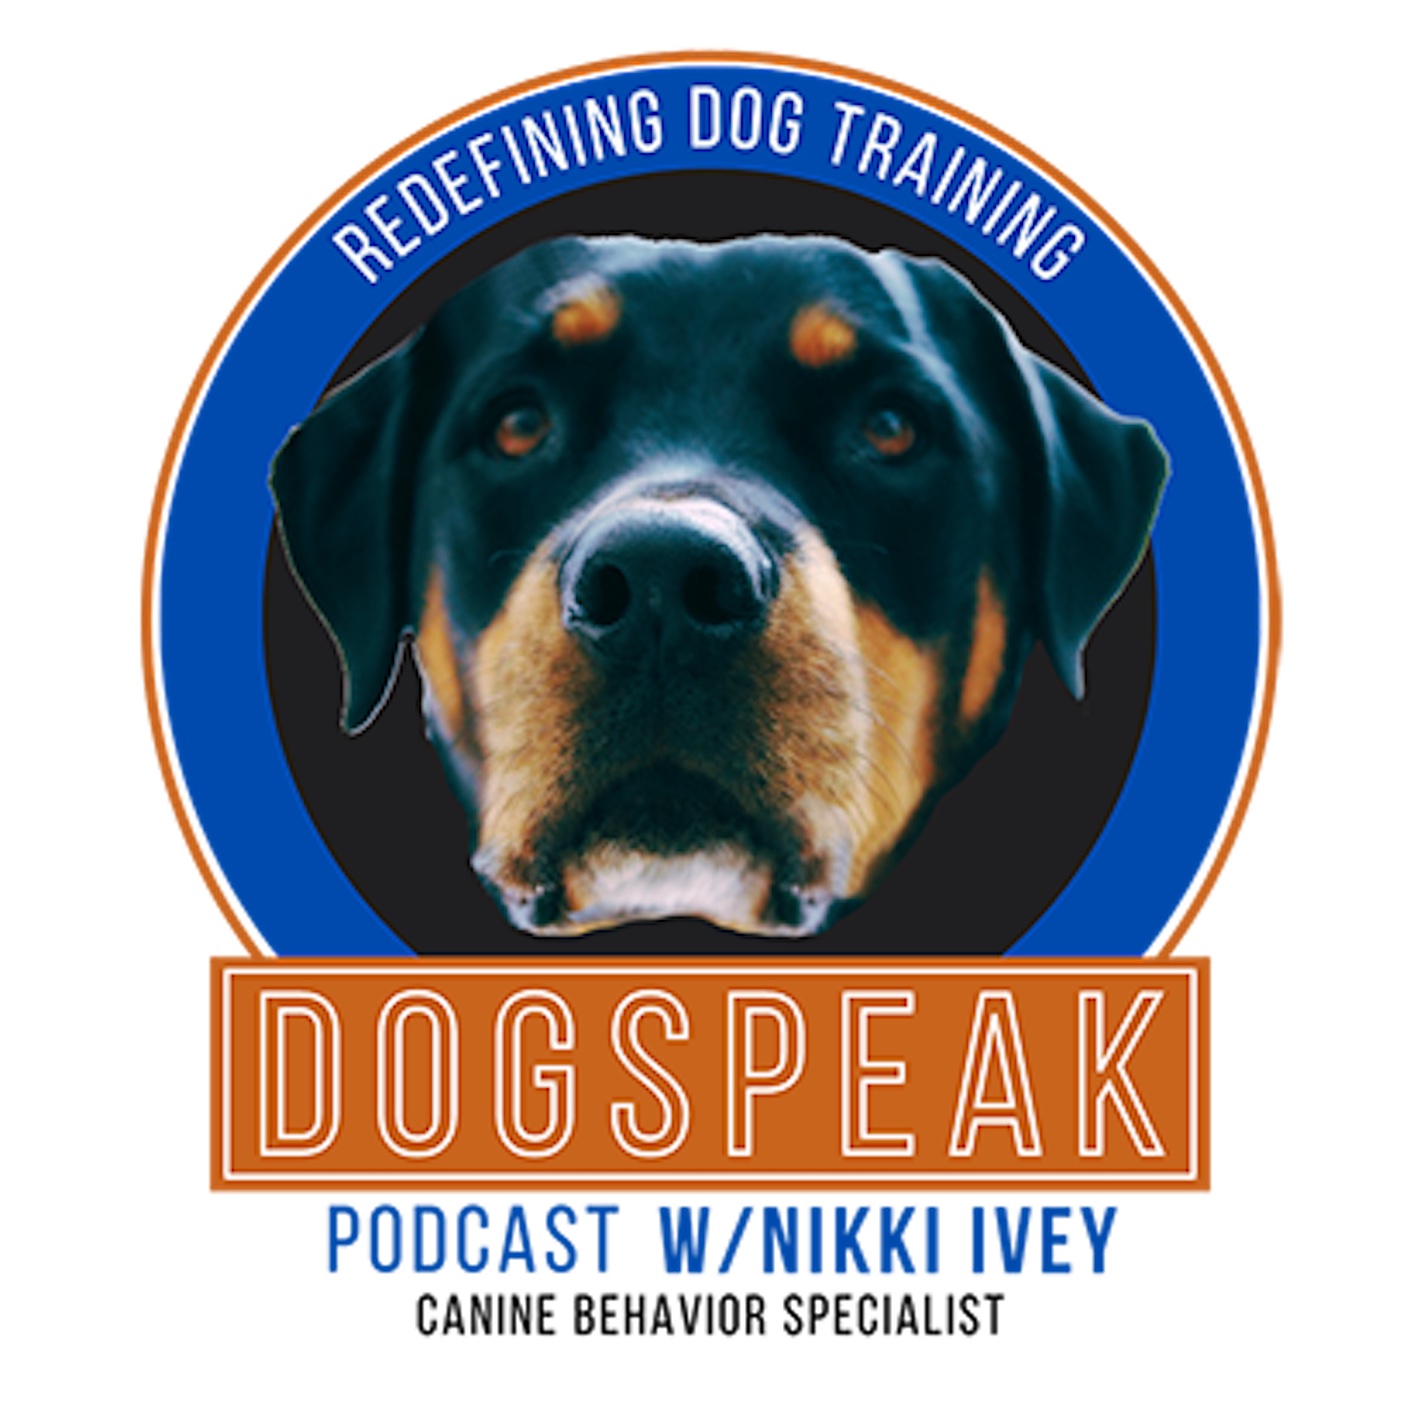 Artwork for podcast DogSpeak: Redefining Dog Training